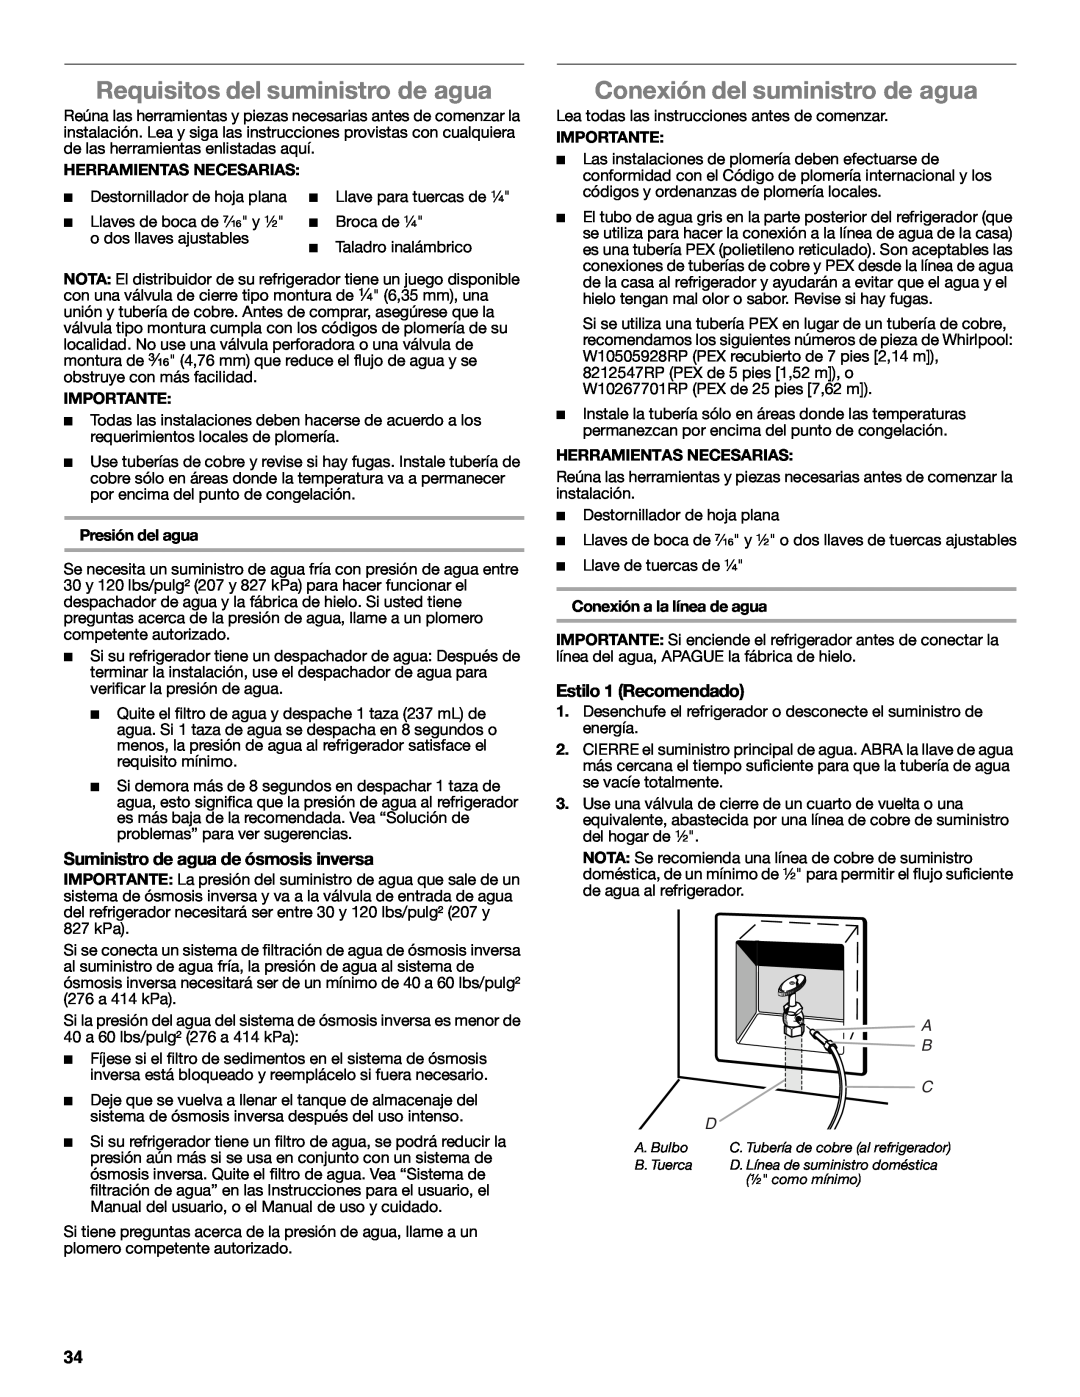 Whirlpool W10632883A Requisitos del suministro de agua, Conexión del suministro de agua, Estilo 1 Recomendado 